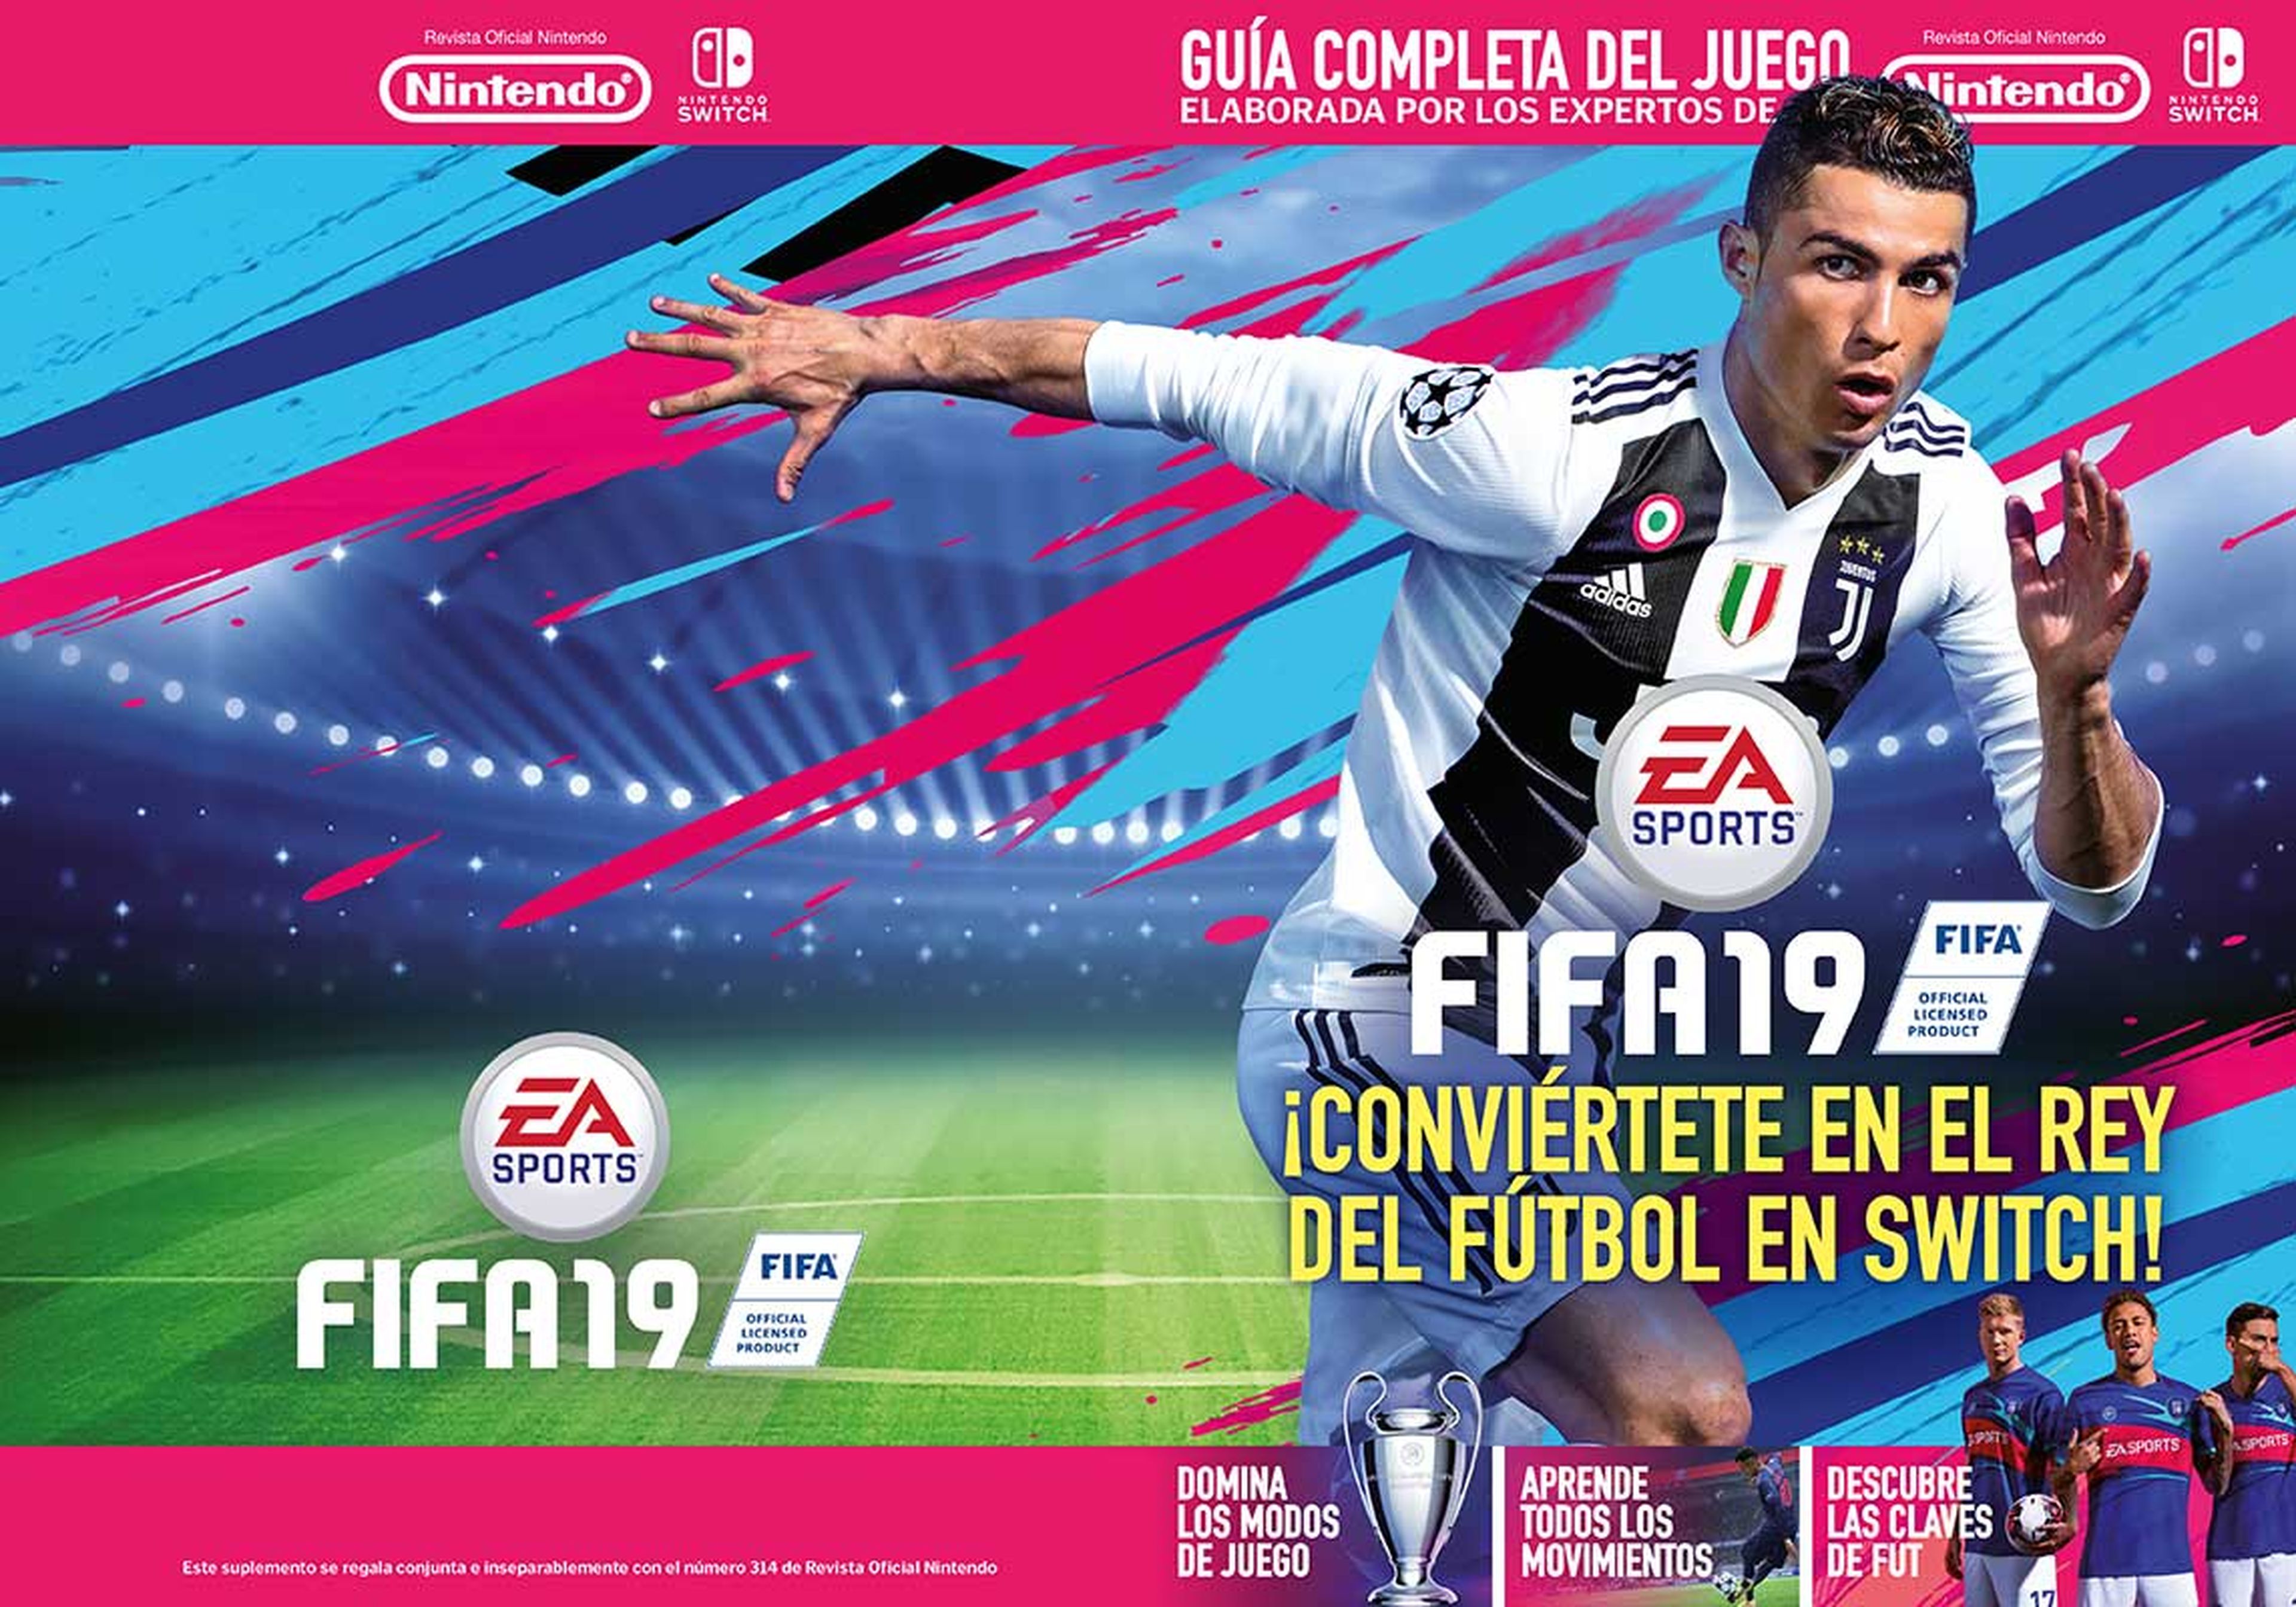 Suplemento FIFA 19 RON 314